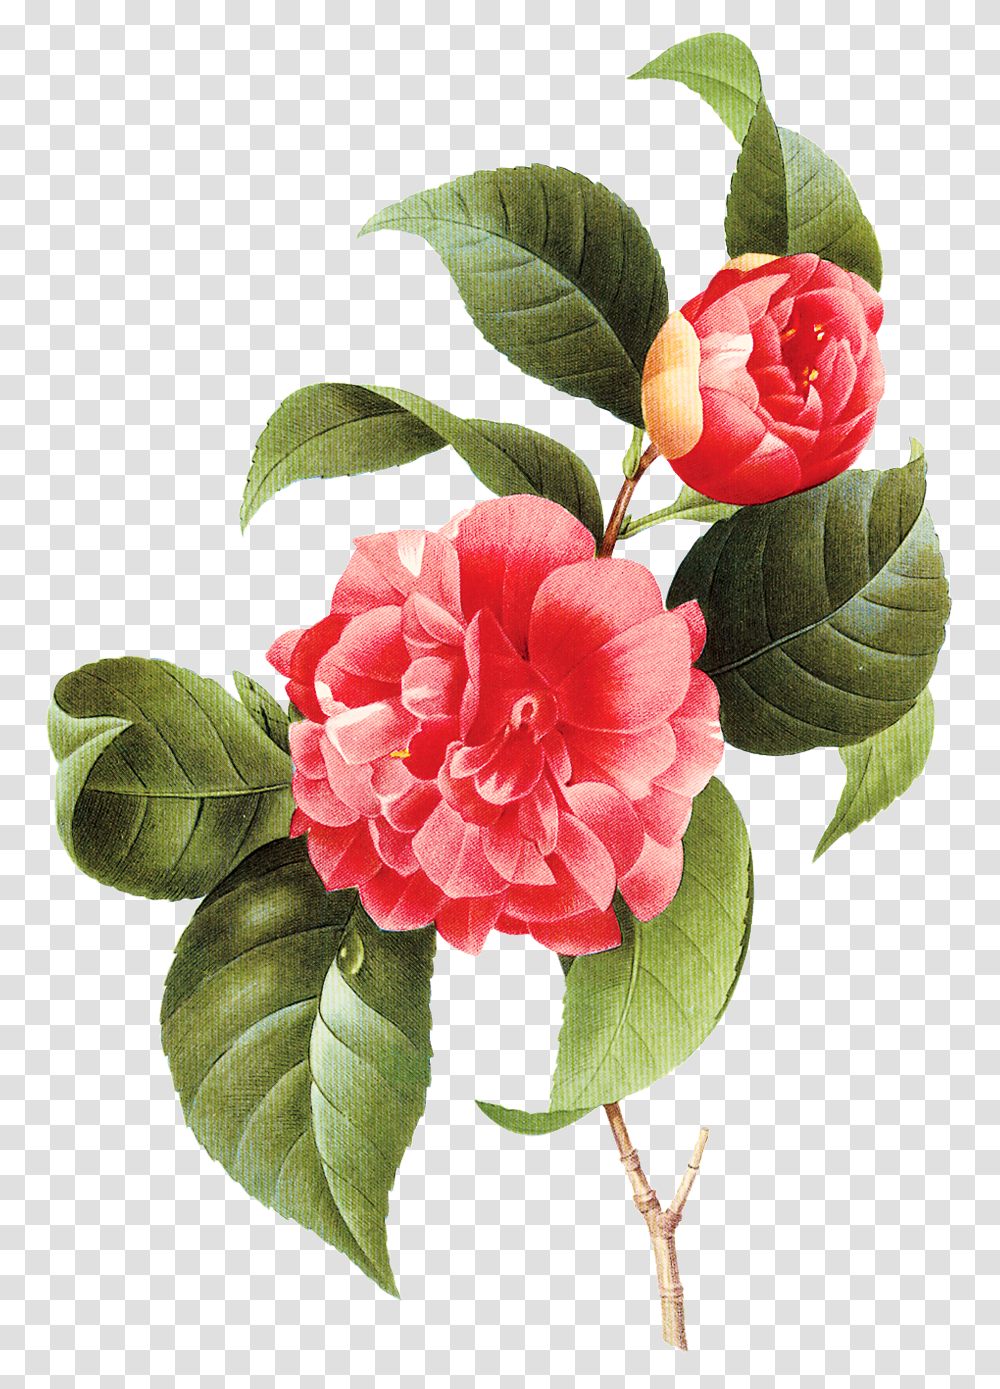 Vintage Little Vector Flower Transparente Imagens Camellia Poster, Plant, Blossom, Peony, Carnation Transparent Png